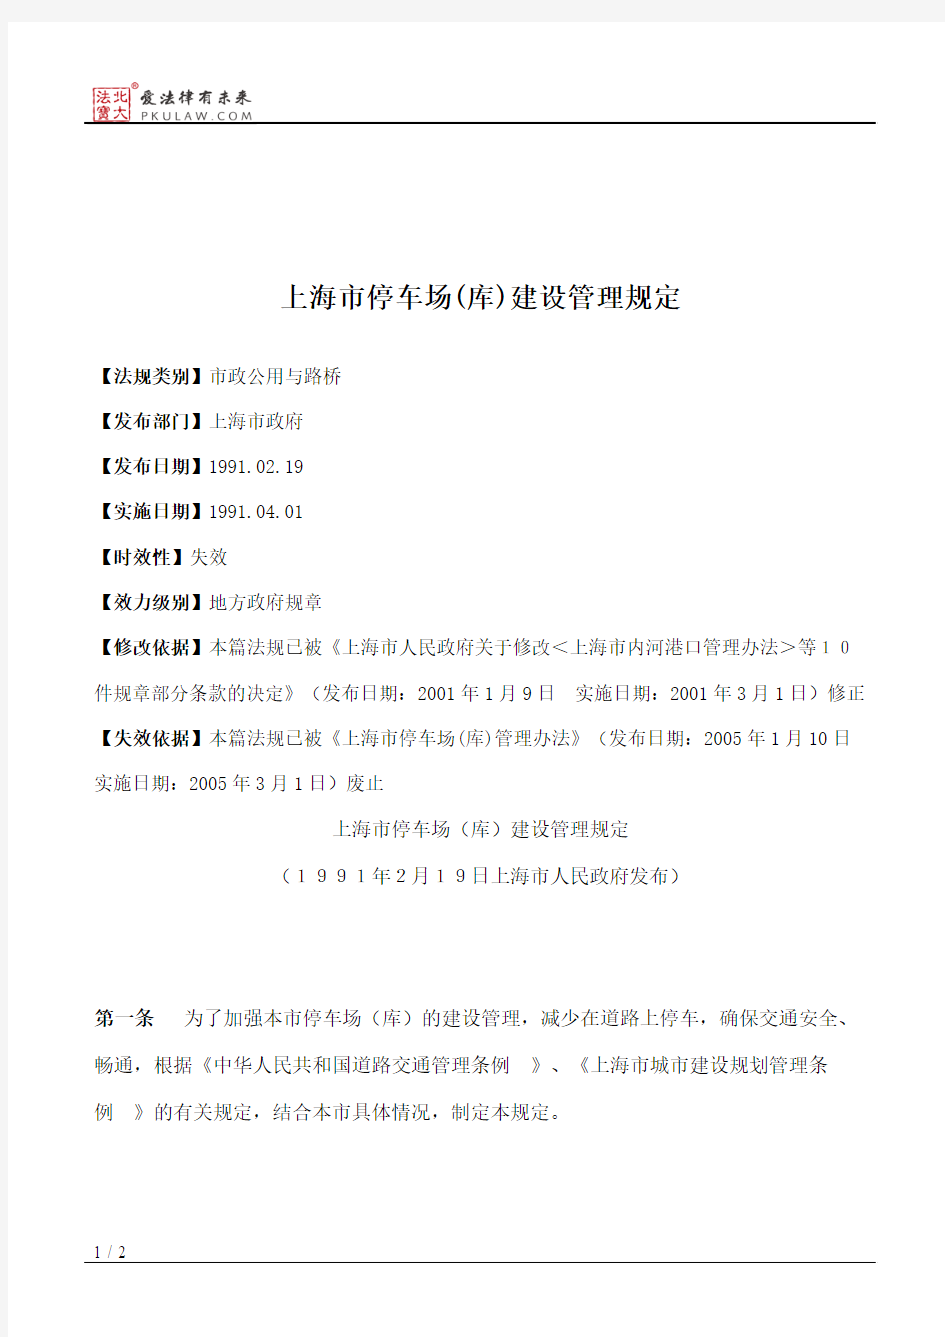 上海市停车场(库)建设管理规定